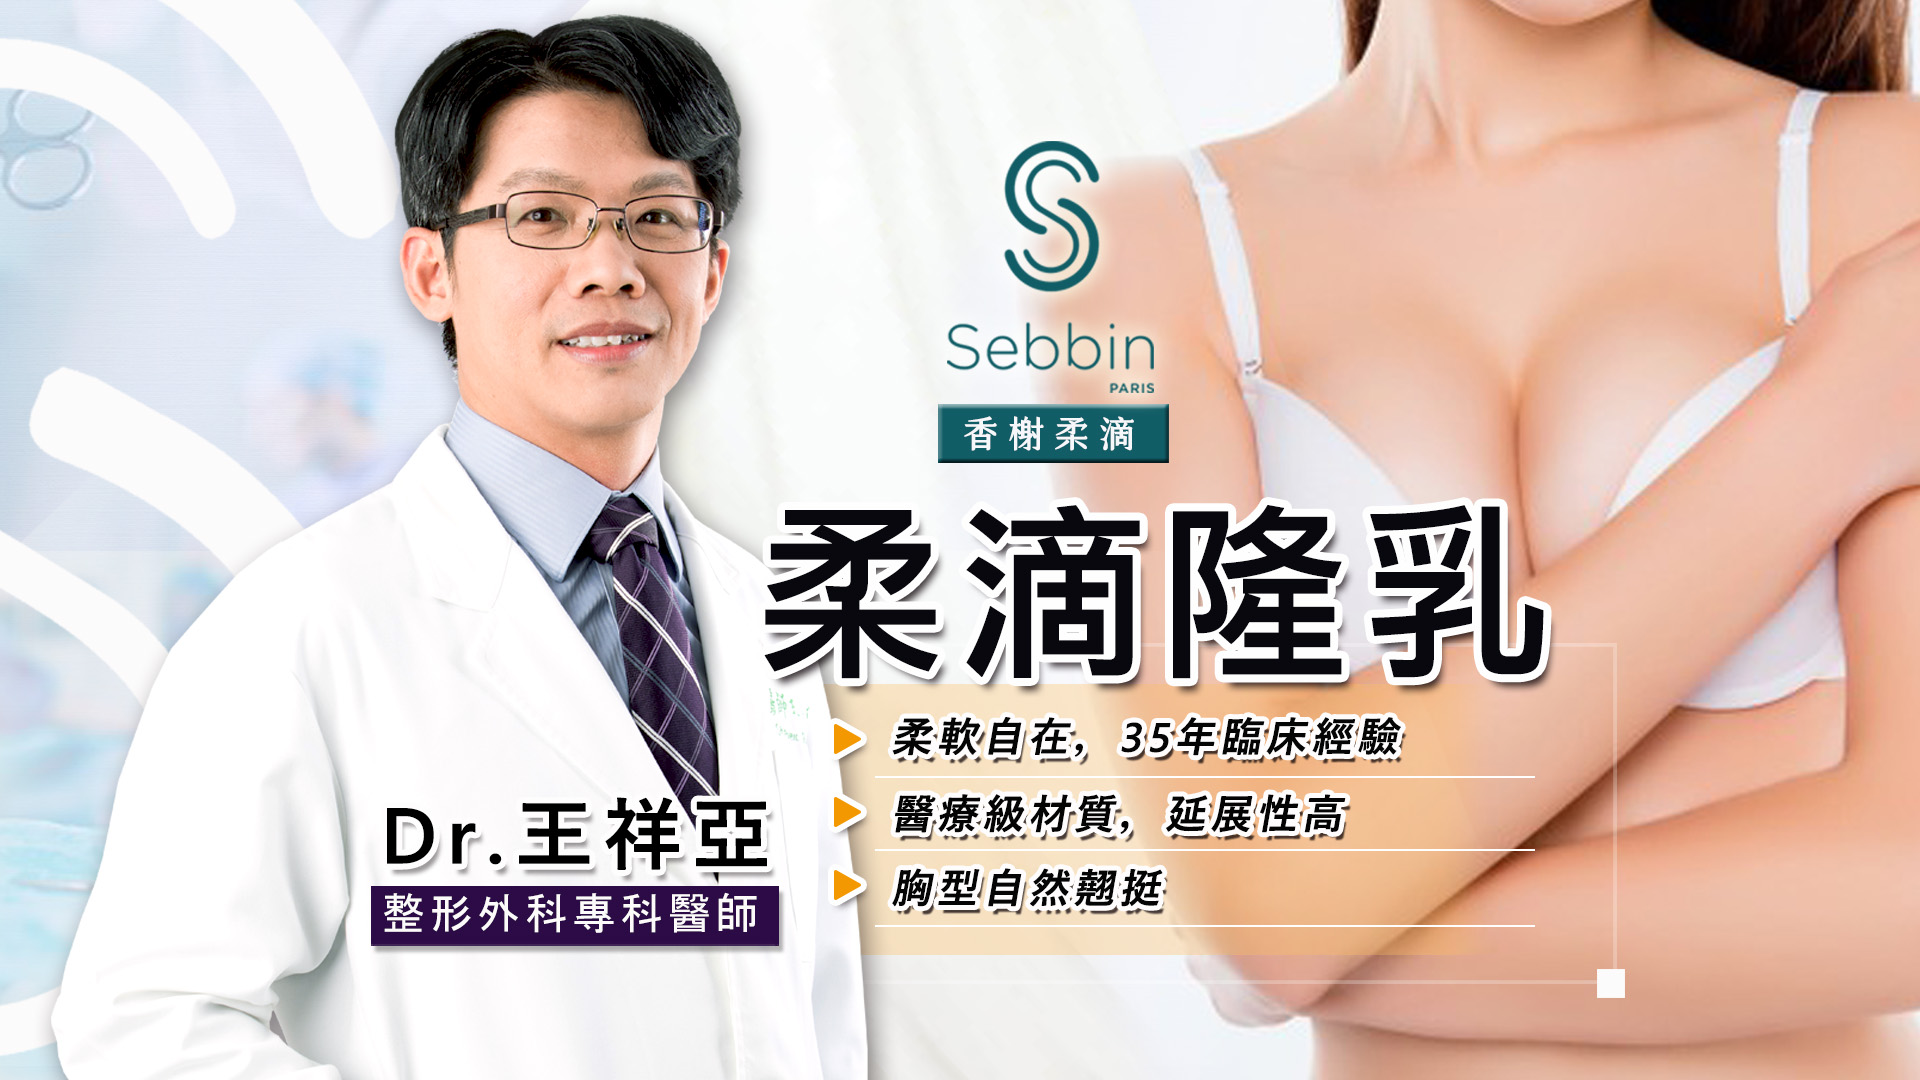 柔滴隆乳Sebbin權威醫師 | 台北亞緻王祥亞